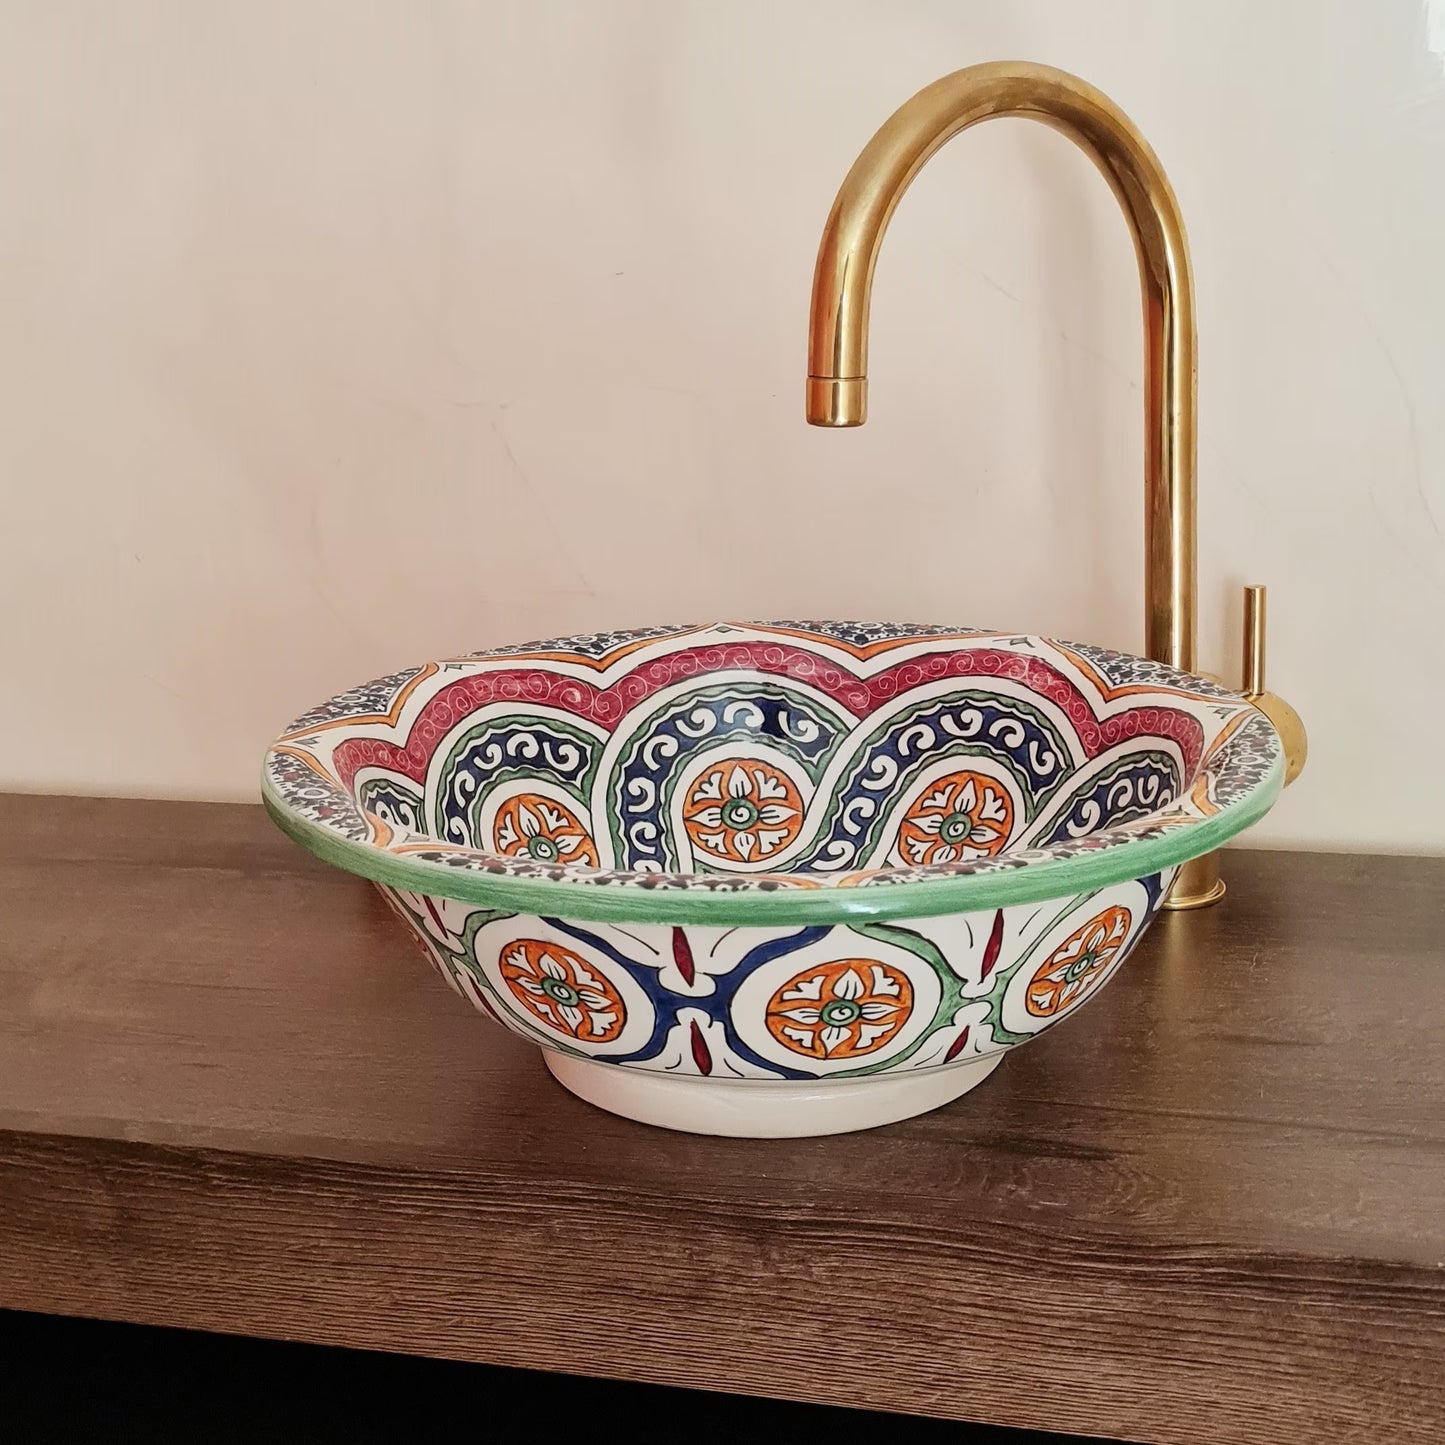 Vasque de salle de bain | Lavabo en céramique marocain pour salle de bain - colorful sink bowl #153